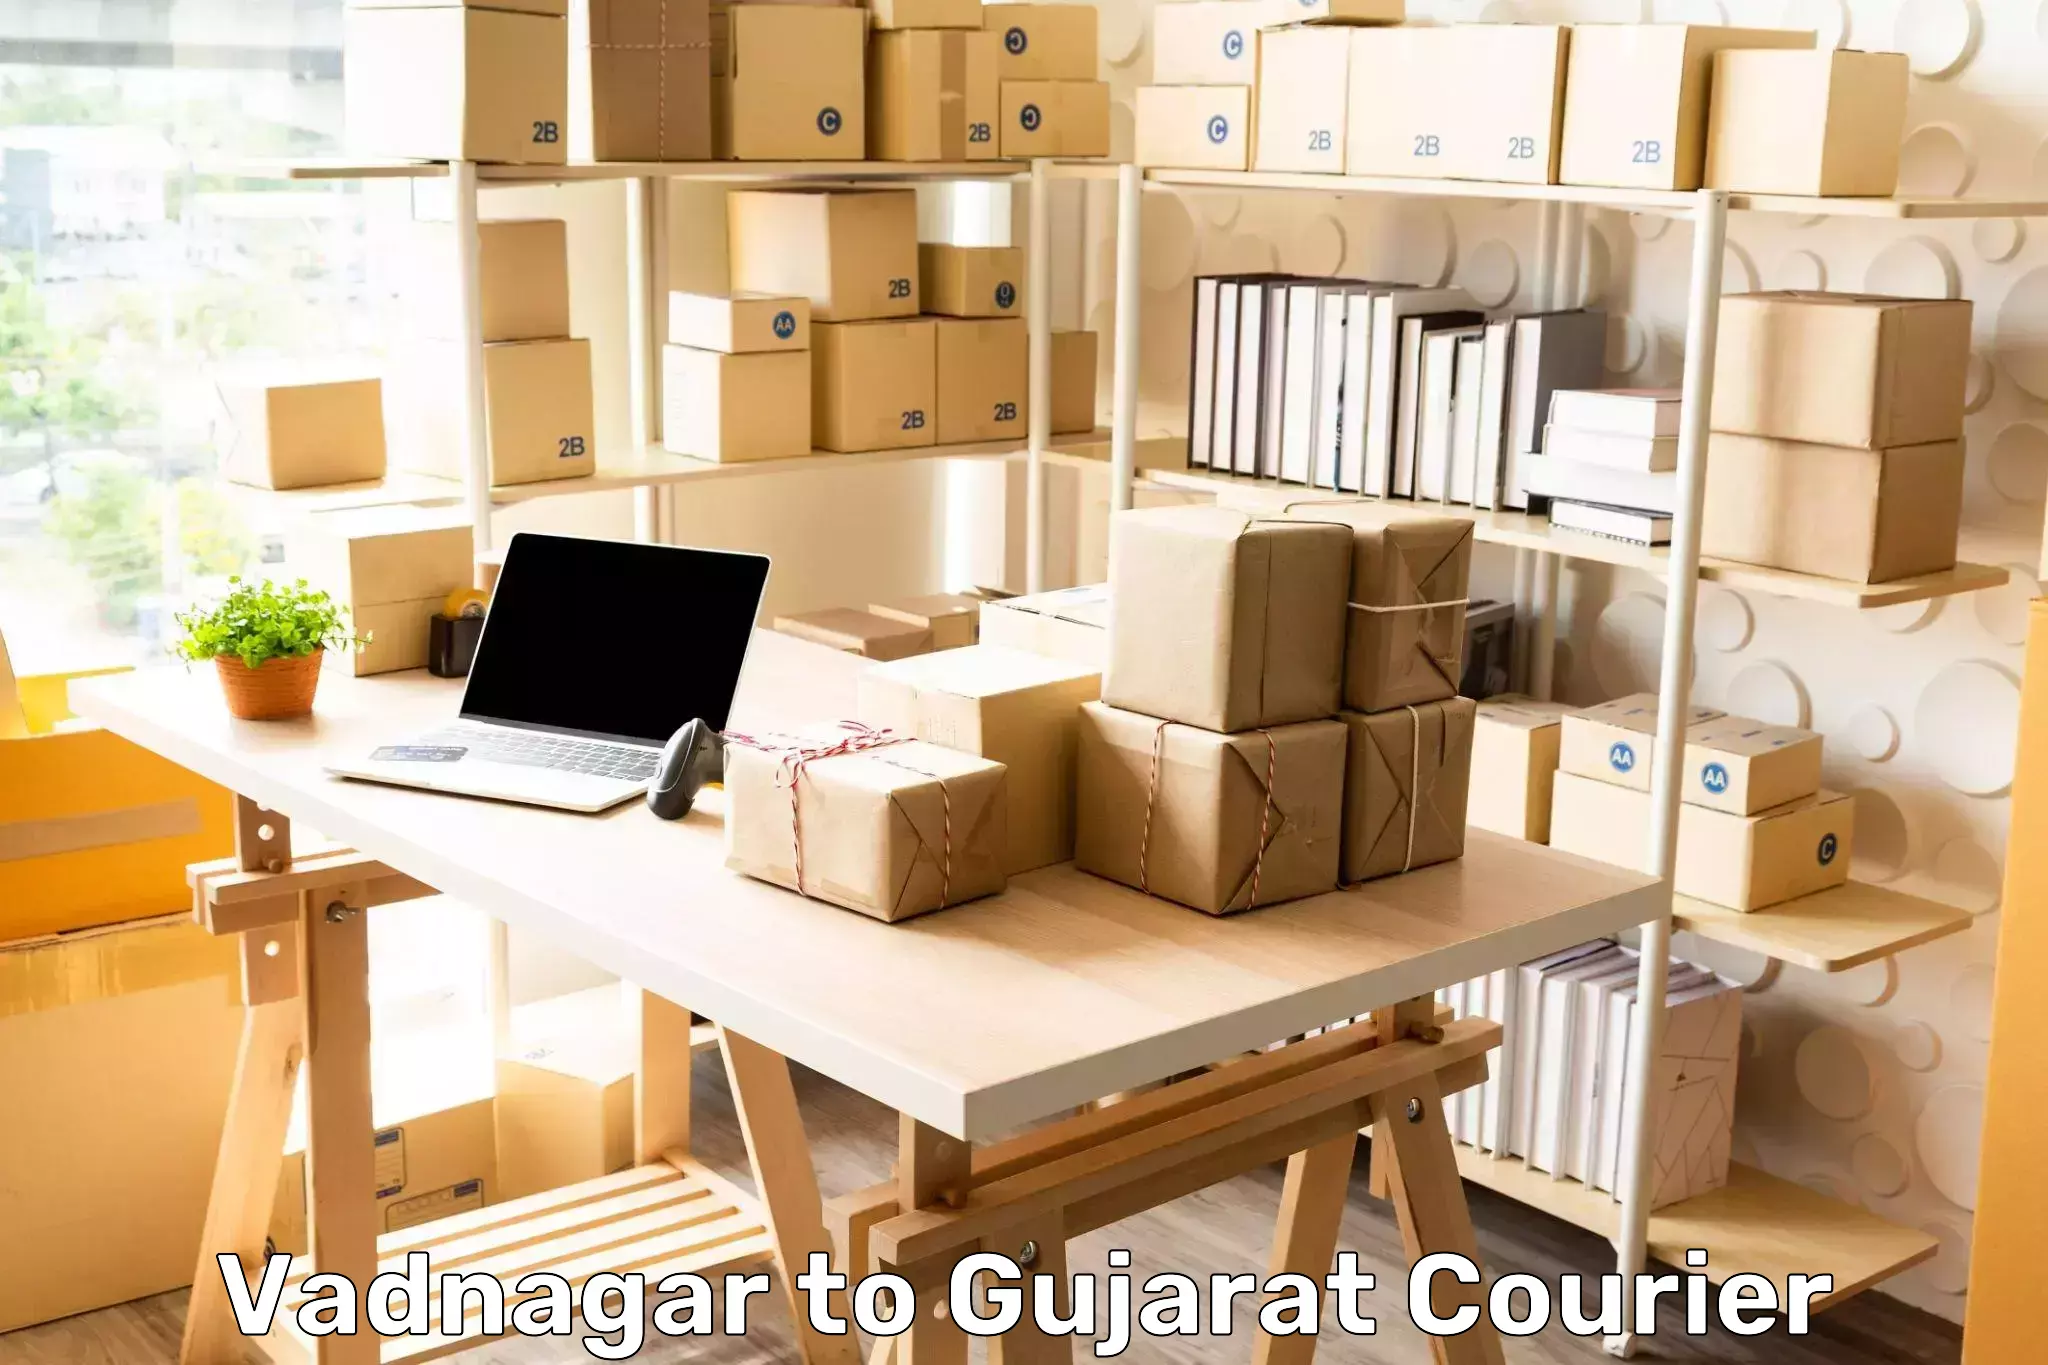 Courier services Vadnagar to Girgadhada